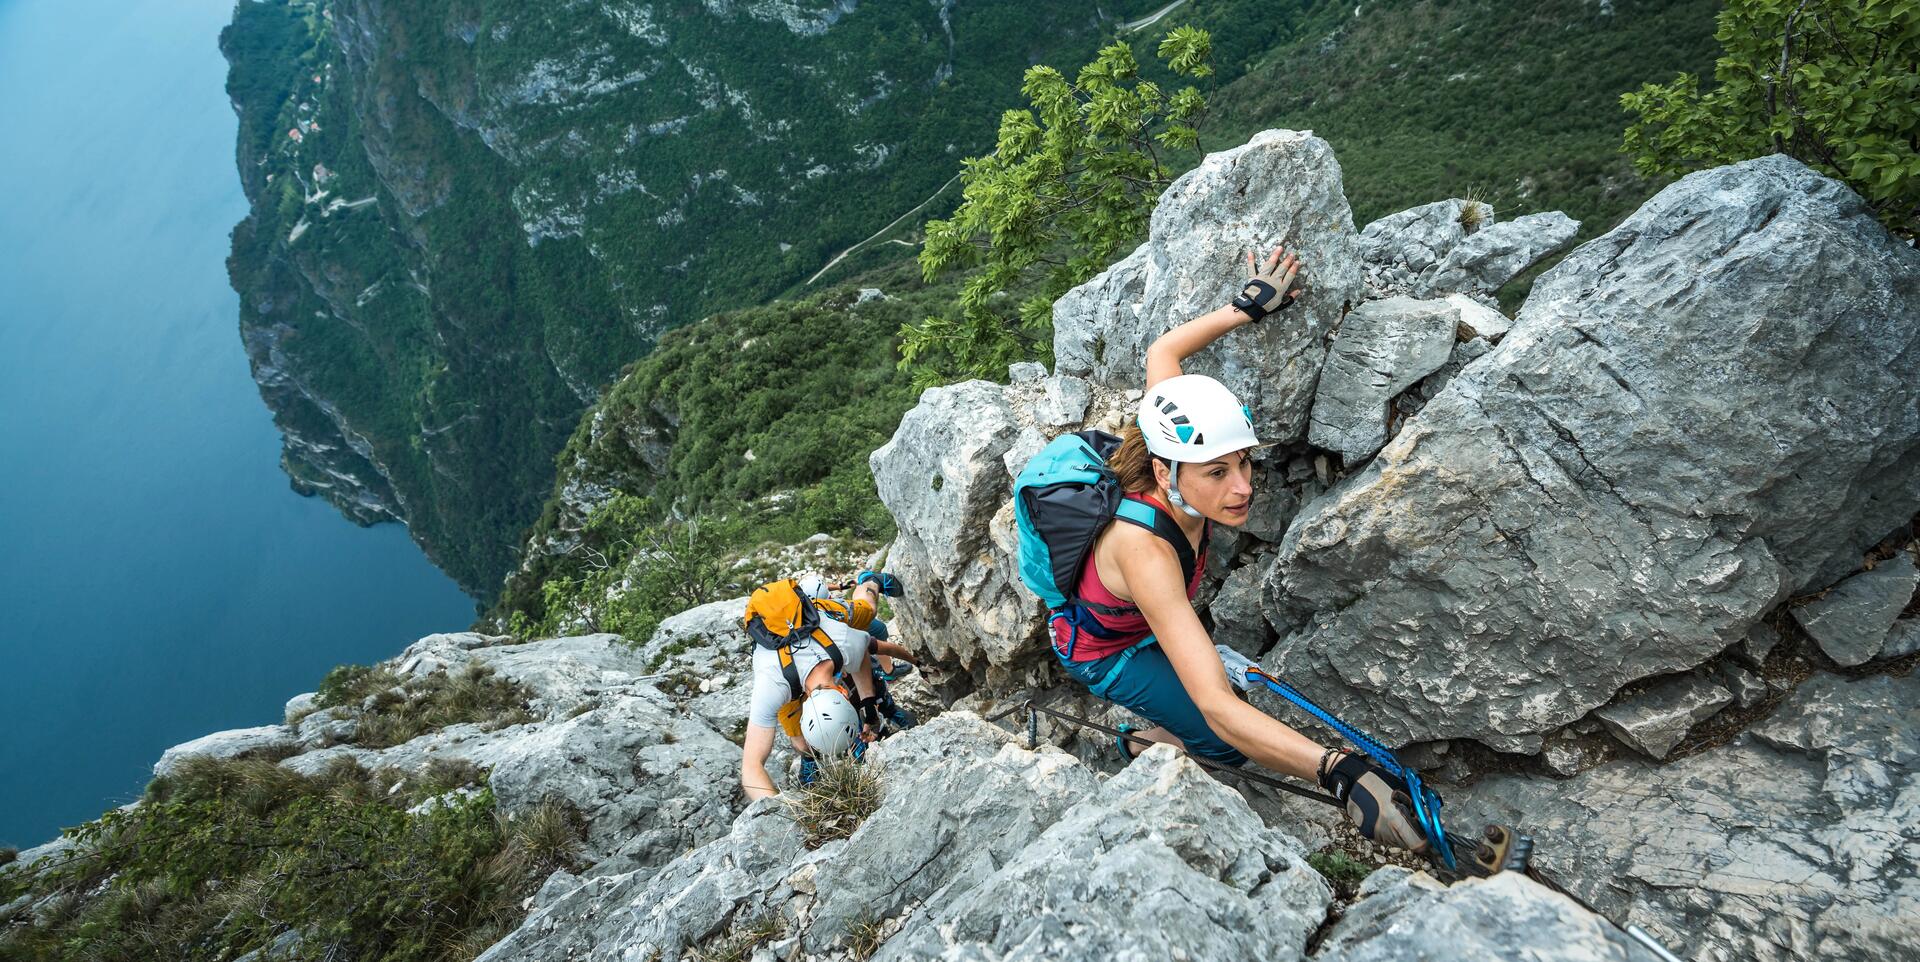 Alles im Griff: So findest du die richtigen Klettersteighandschuhe für die Via Ferrata